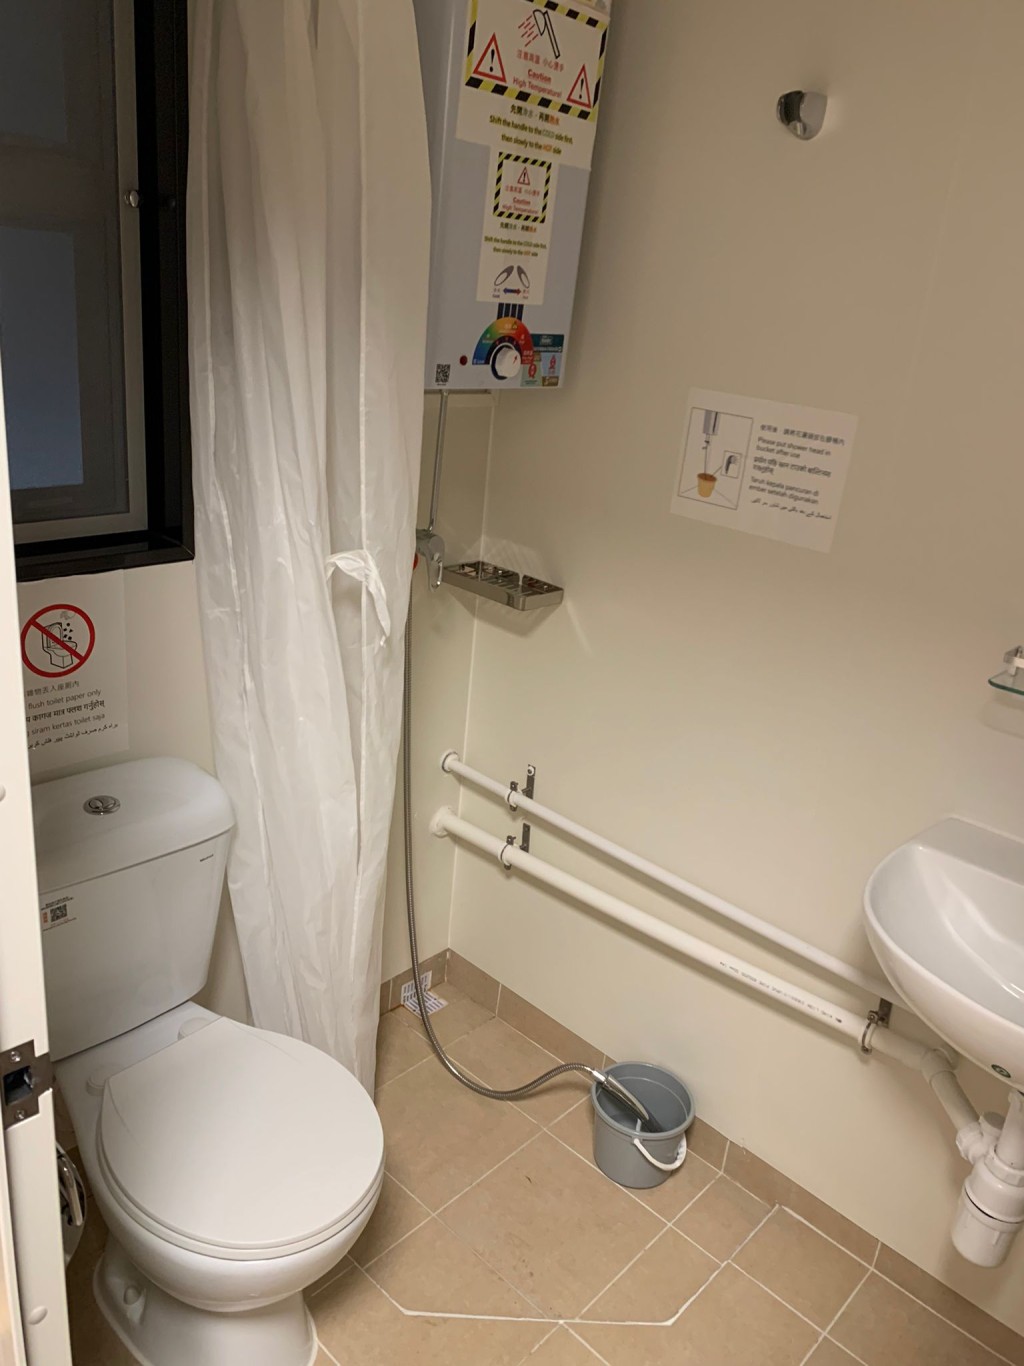 陈小姐形容，竹篙湾检疫中心的房间相当新净，认为是一个适合确诊者隔离治疗的地方。